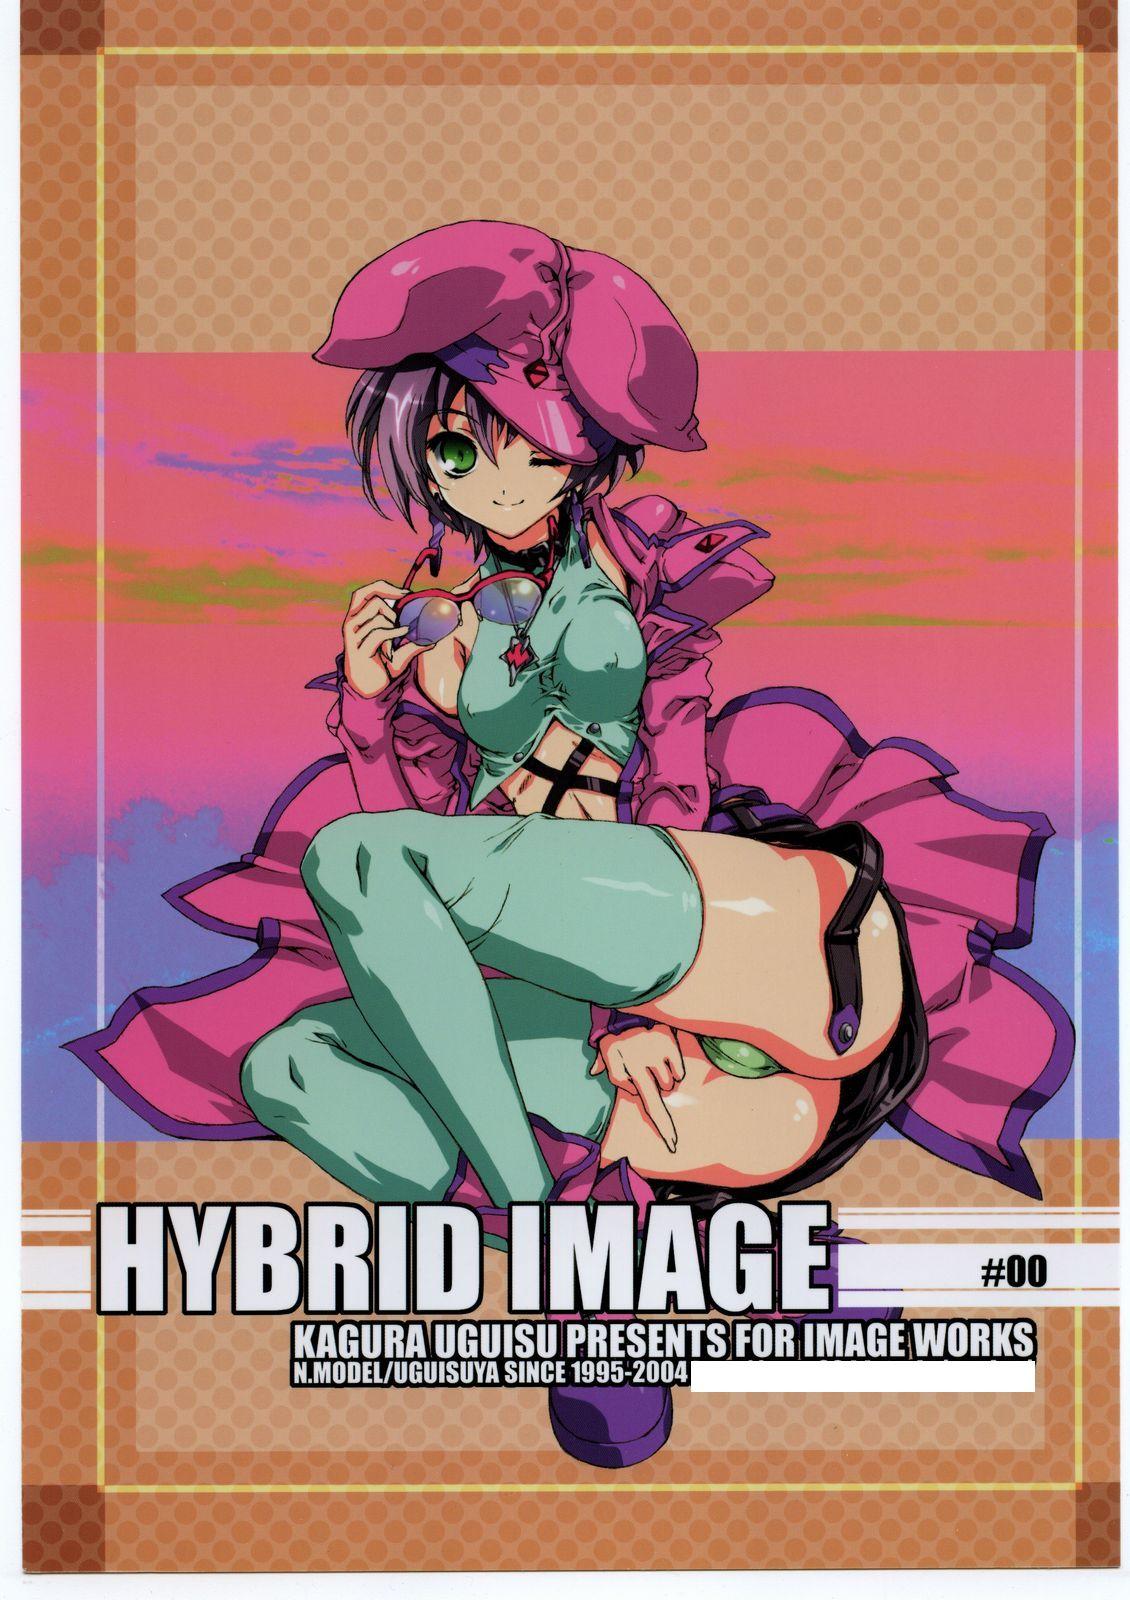 HYBRID IMAGE 1